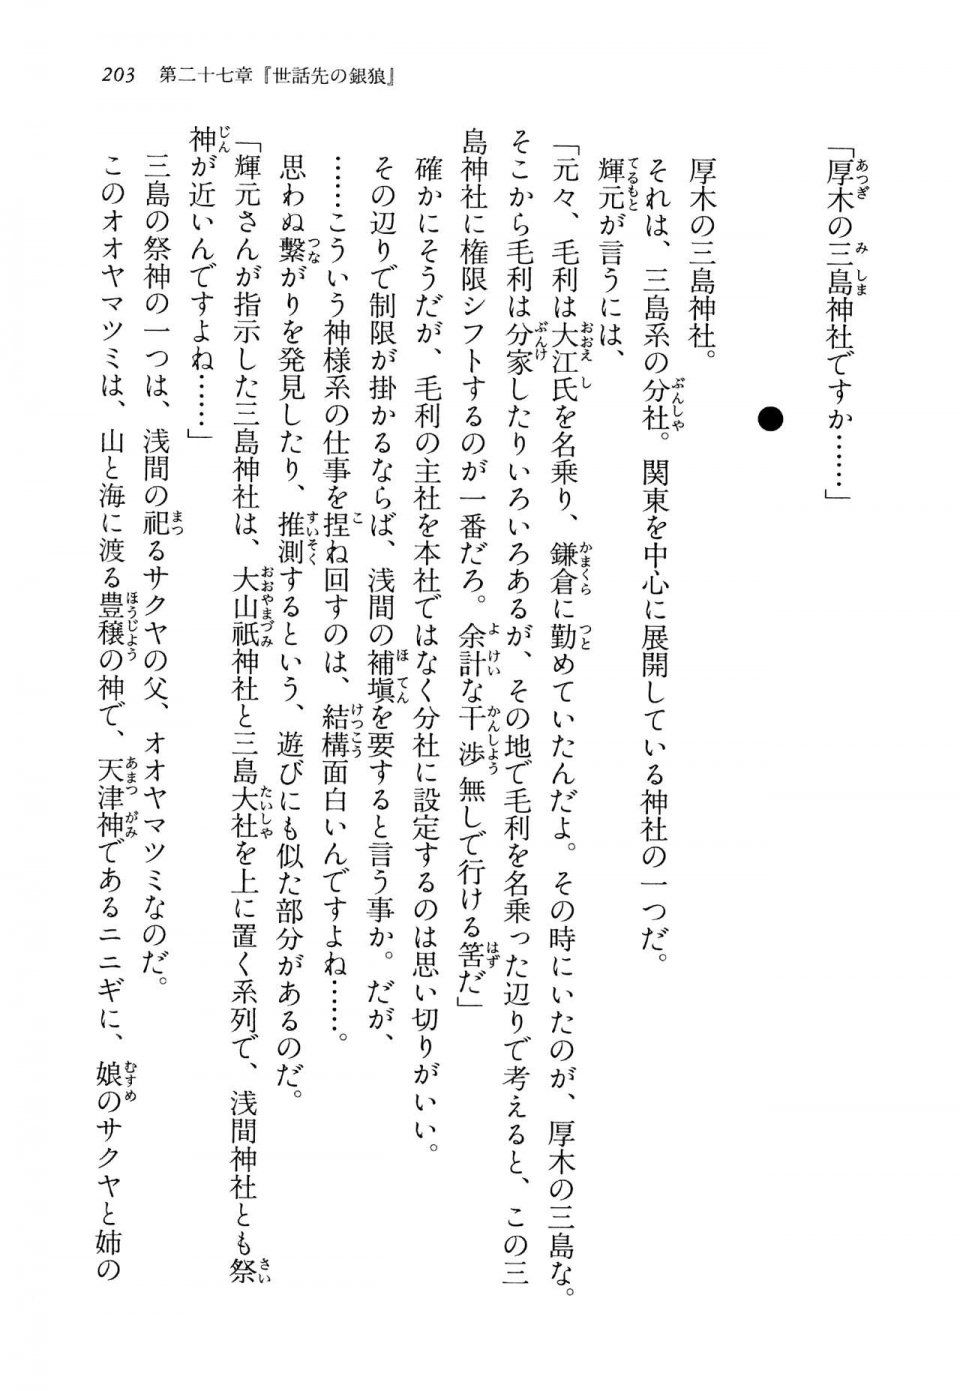 Kyoukai Senjou no Horizon LN Vol 14(6B) - Photo #203